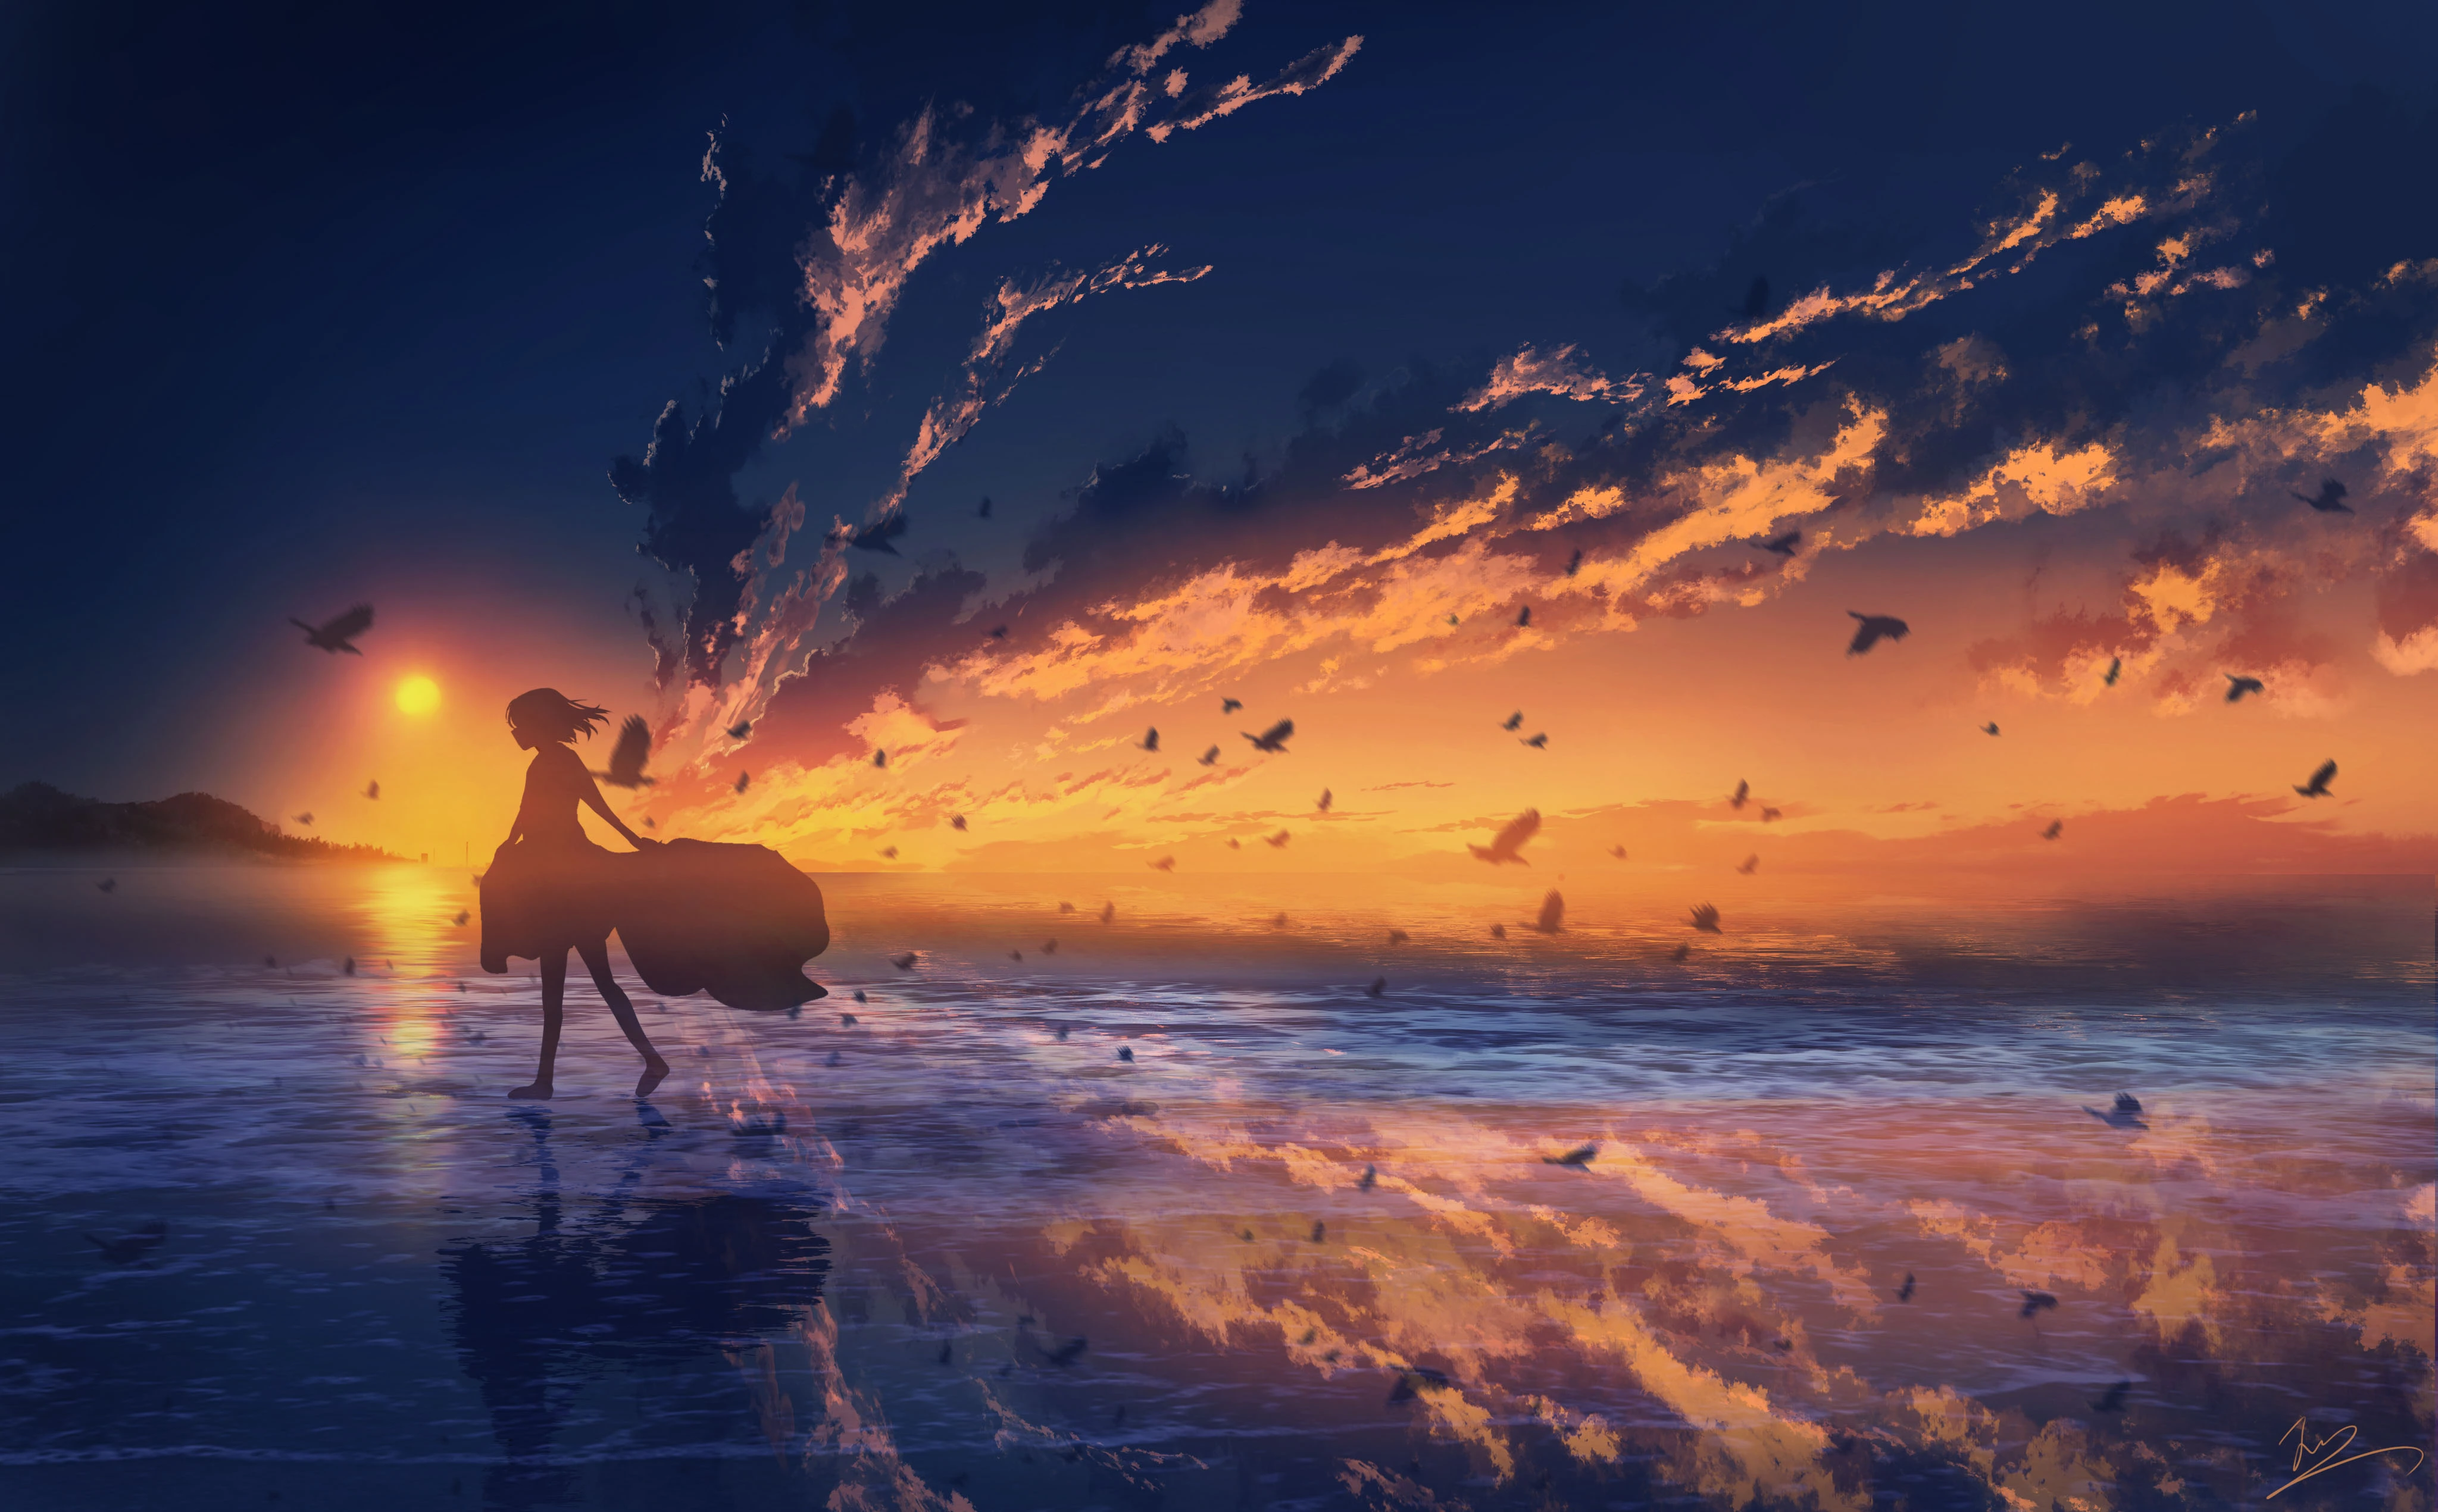 Girl At Horizon While Sunset 4k (3840×2160) - 4k Wallpapers - 40.000 ...